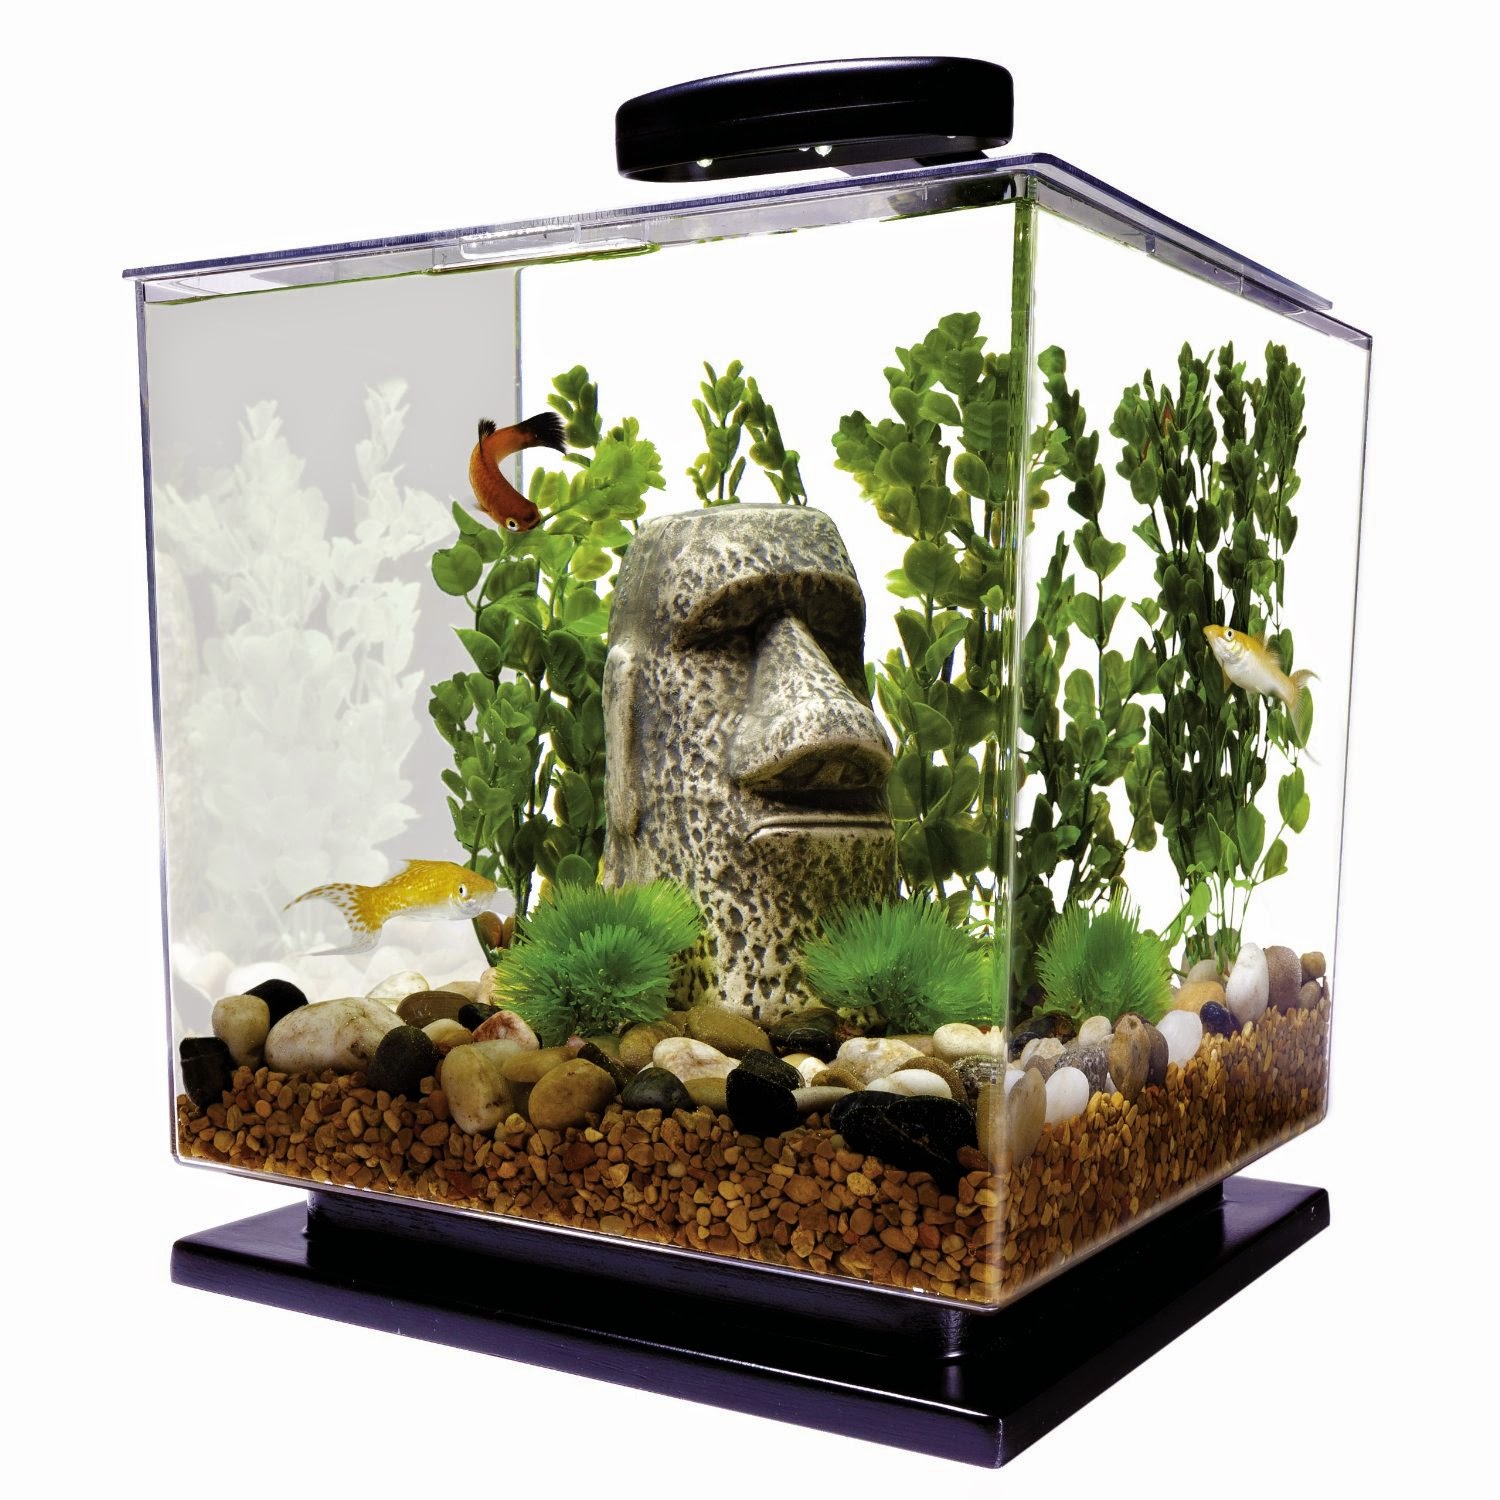 I Love Betta Fish: Betta Fish Tank - Betta Aquariums